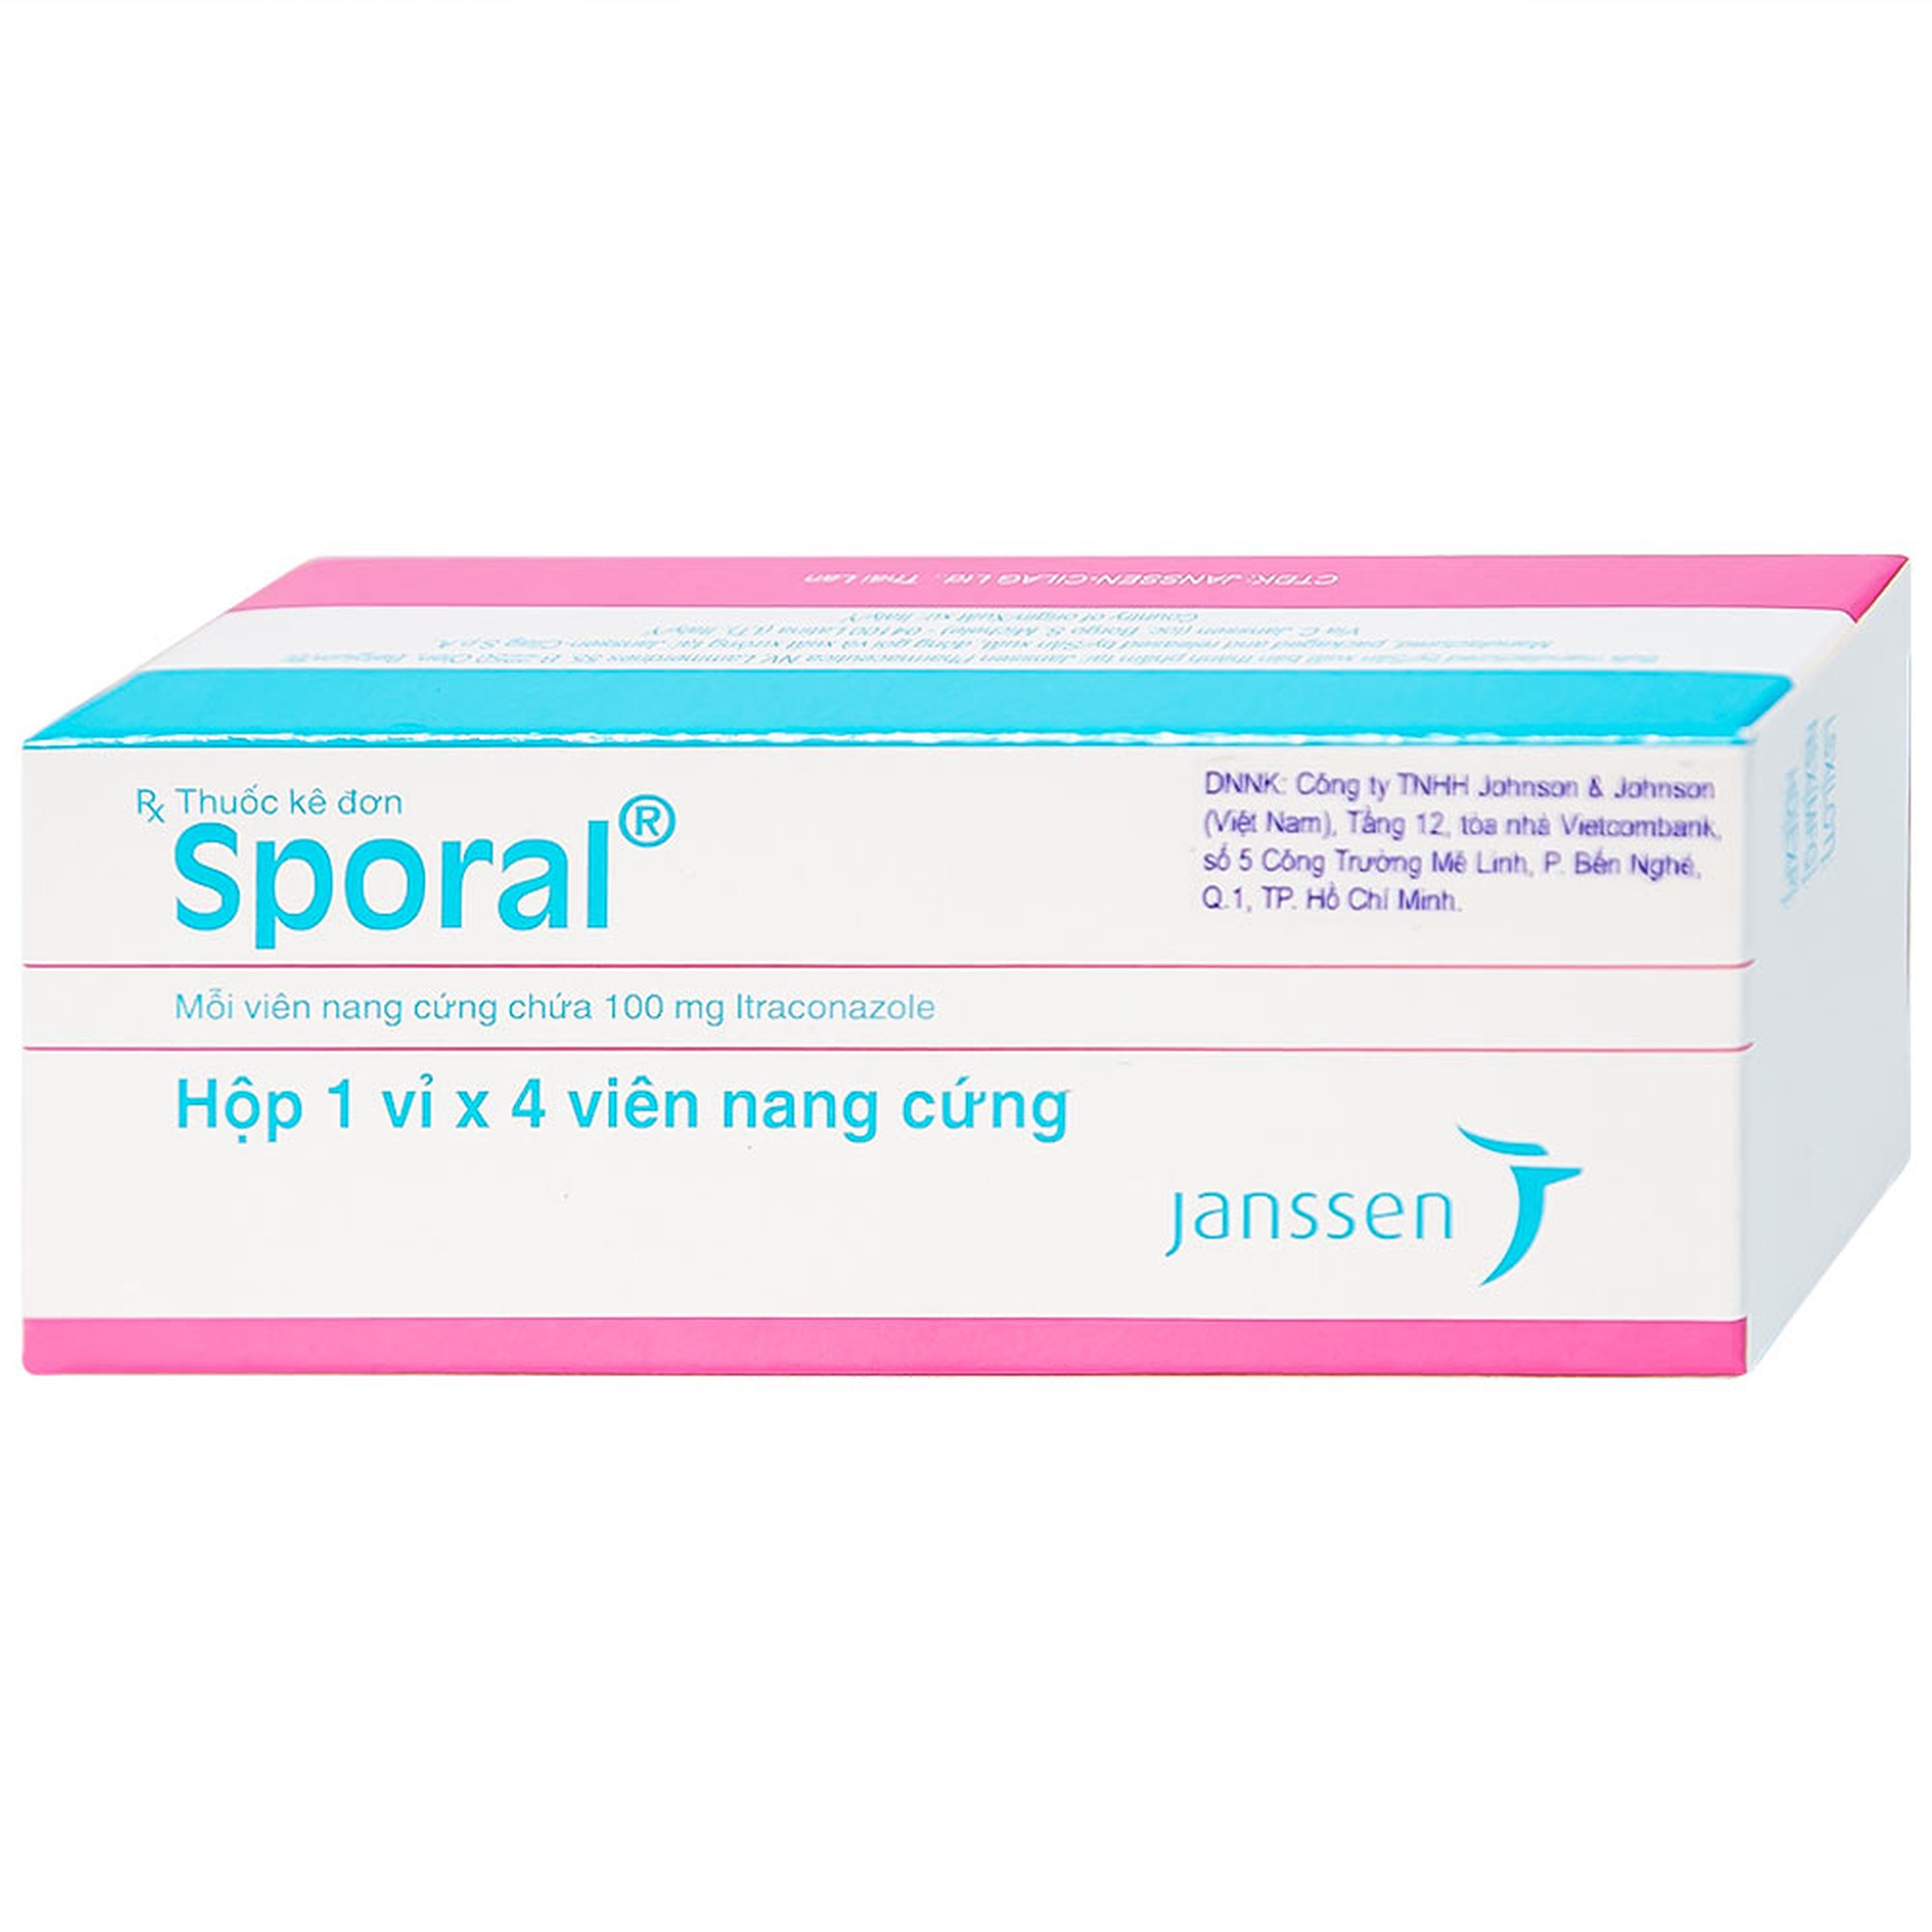 Thuốc Sporal Janssen điều trị các bệnh nấm phụ khoa, da, toàn thân (1 vỉ x 4 viên)